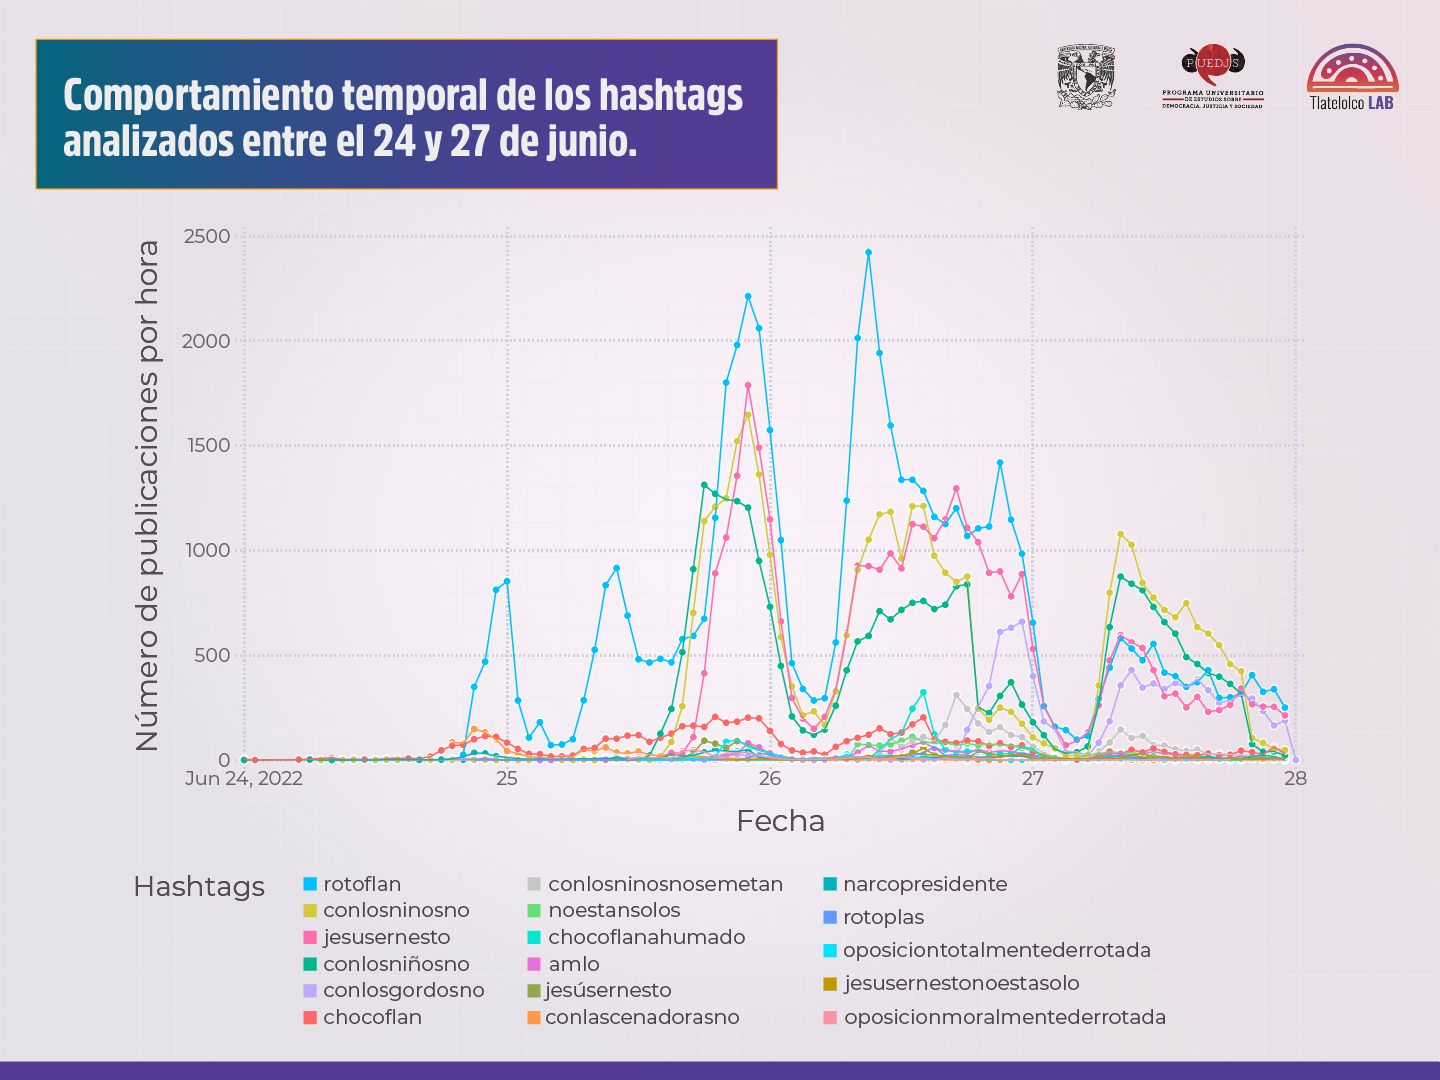 Gráfica de comportamiento de hashtags del estudio realizado por Tlatelolco Lab (Imagen: Twitter/@PUEDJSUNAM)